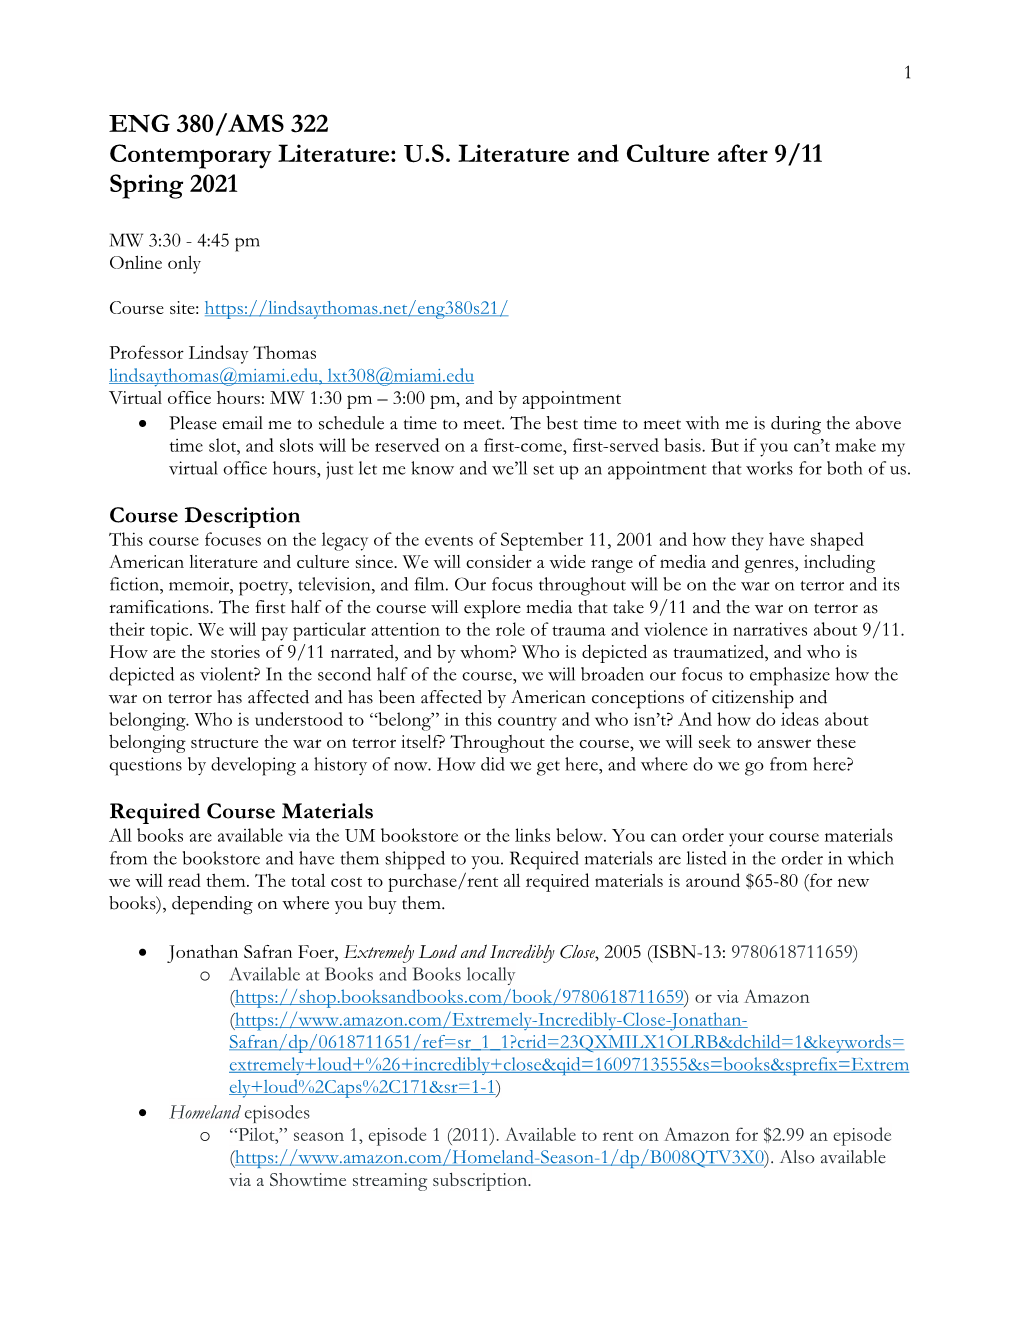 Download PDF of Syllabus